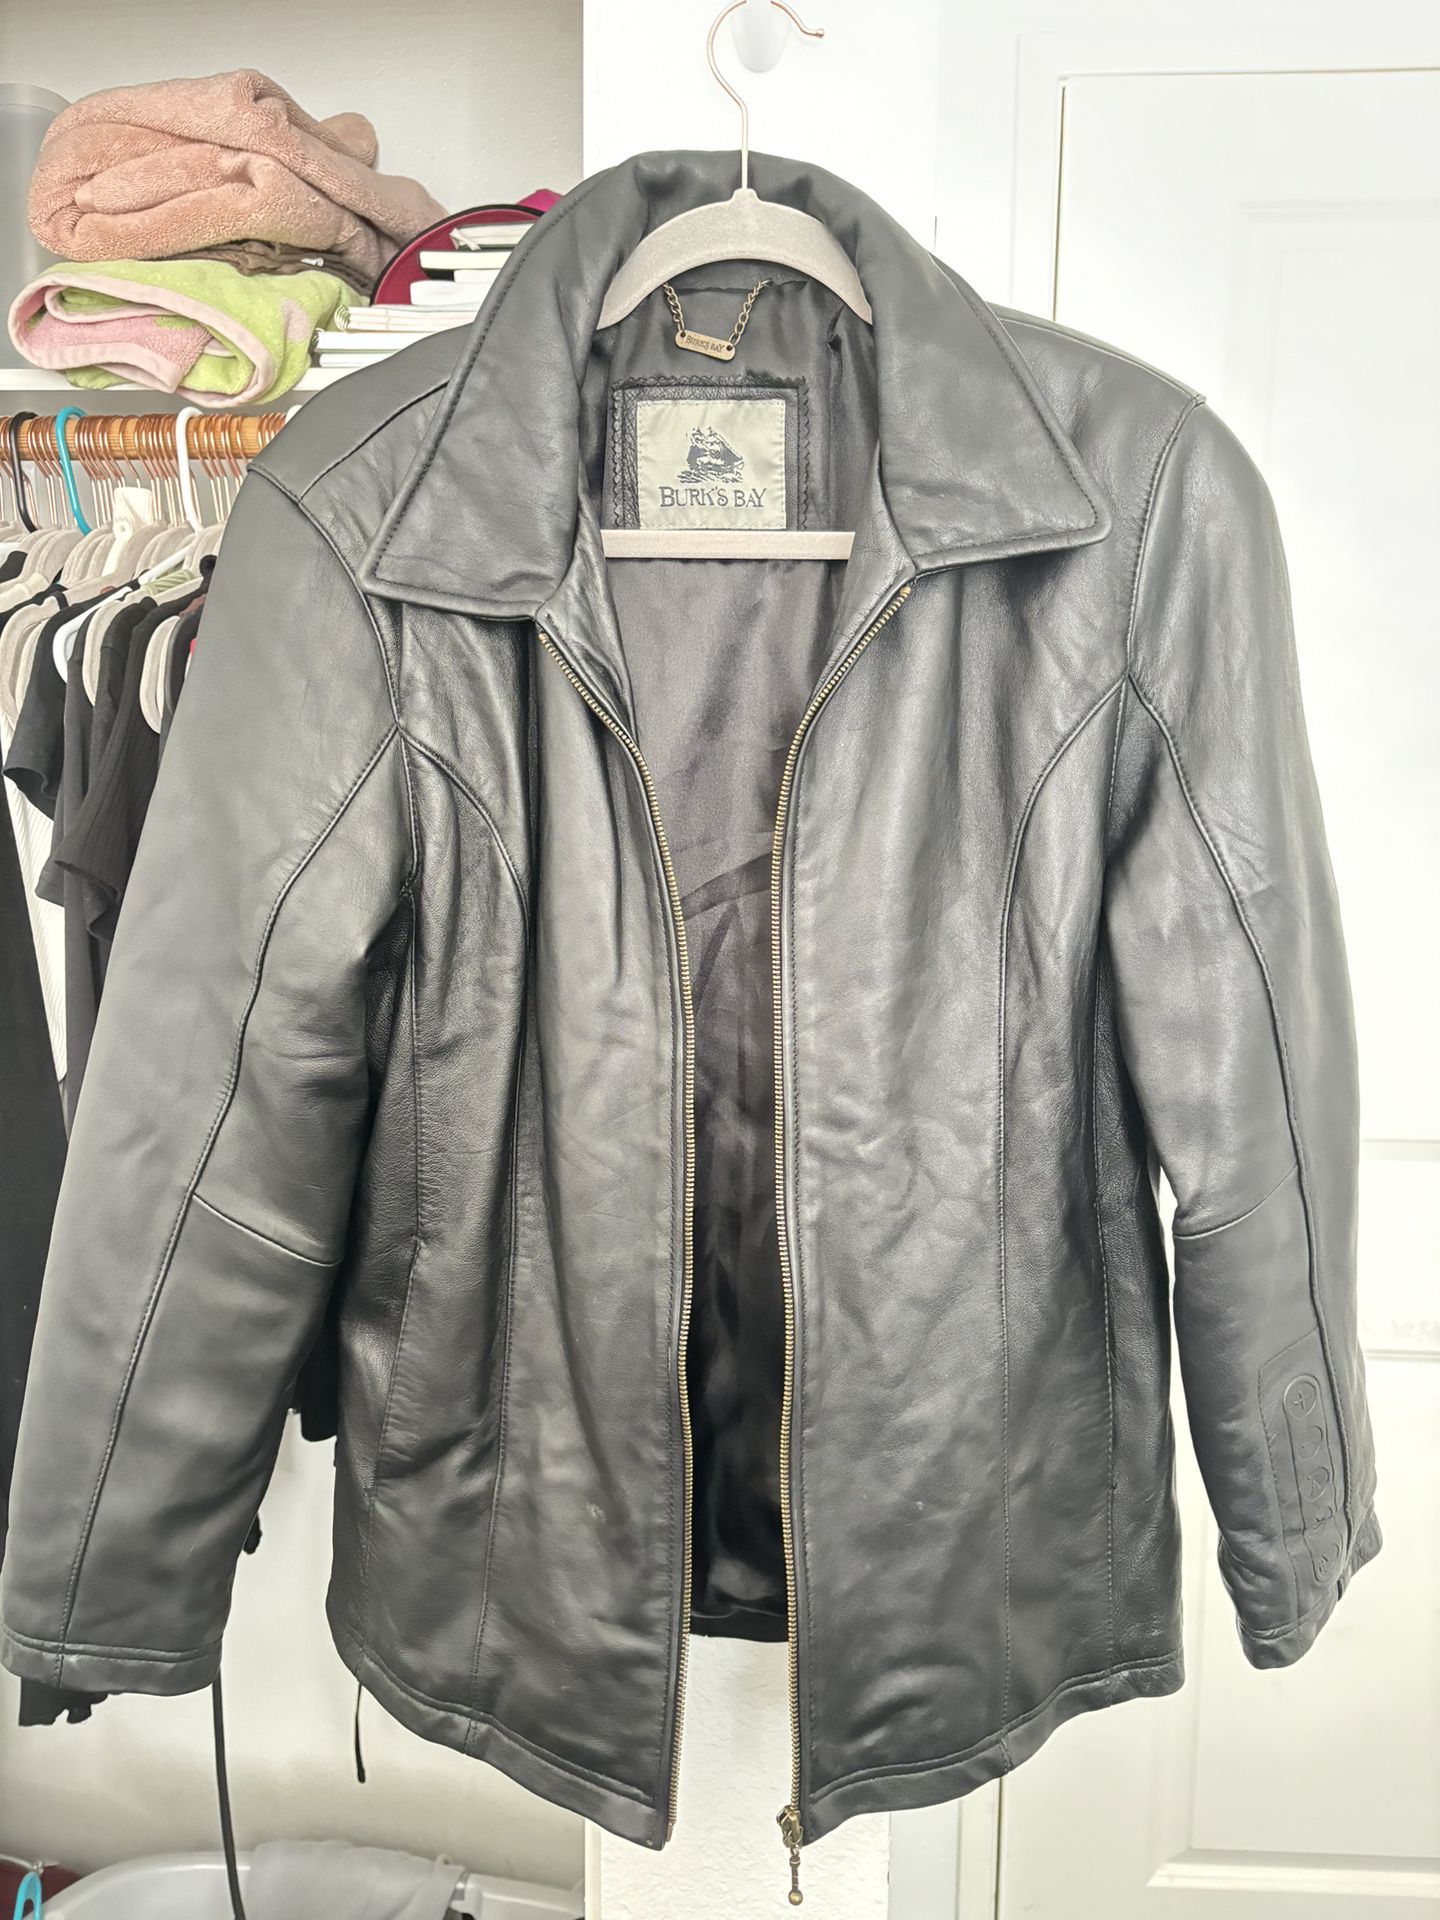 Burks Bay Leather Jacket 